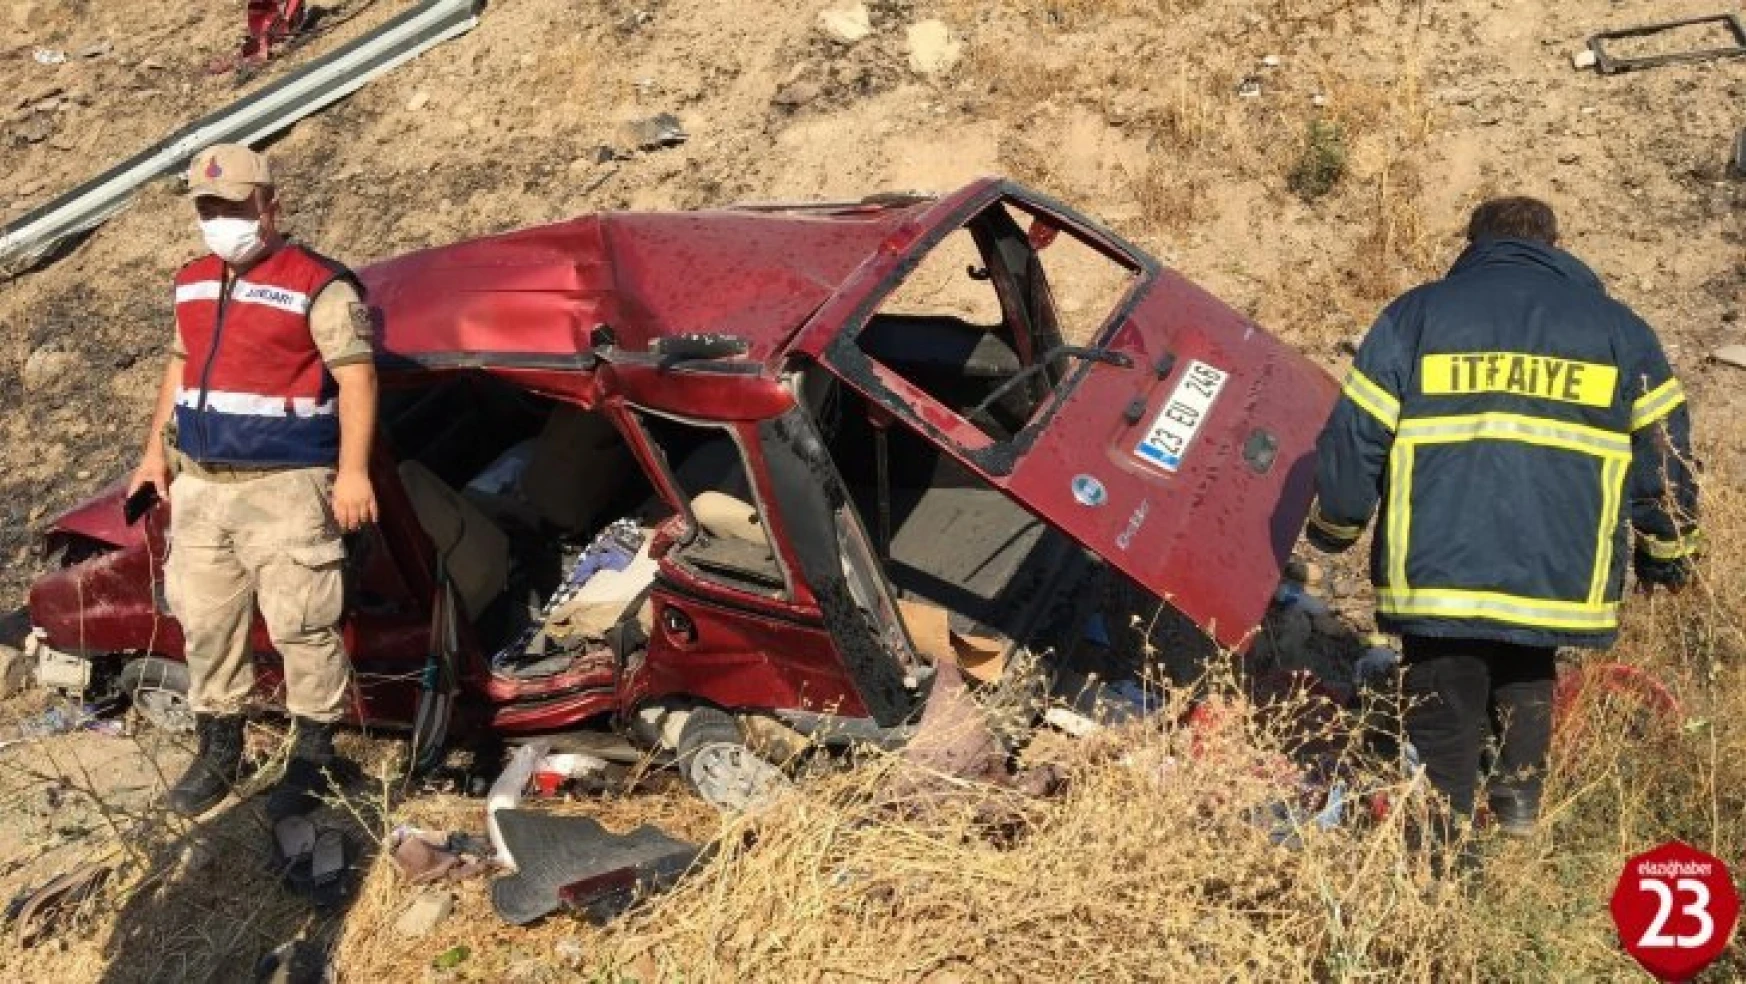 Elazığ'da otomobil şarampole yuvarlandı: 1 ölü, 4 yaralı